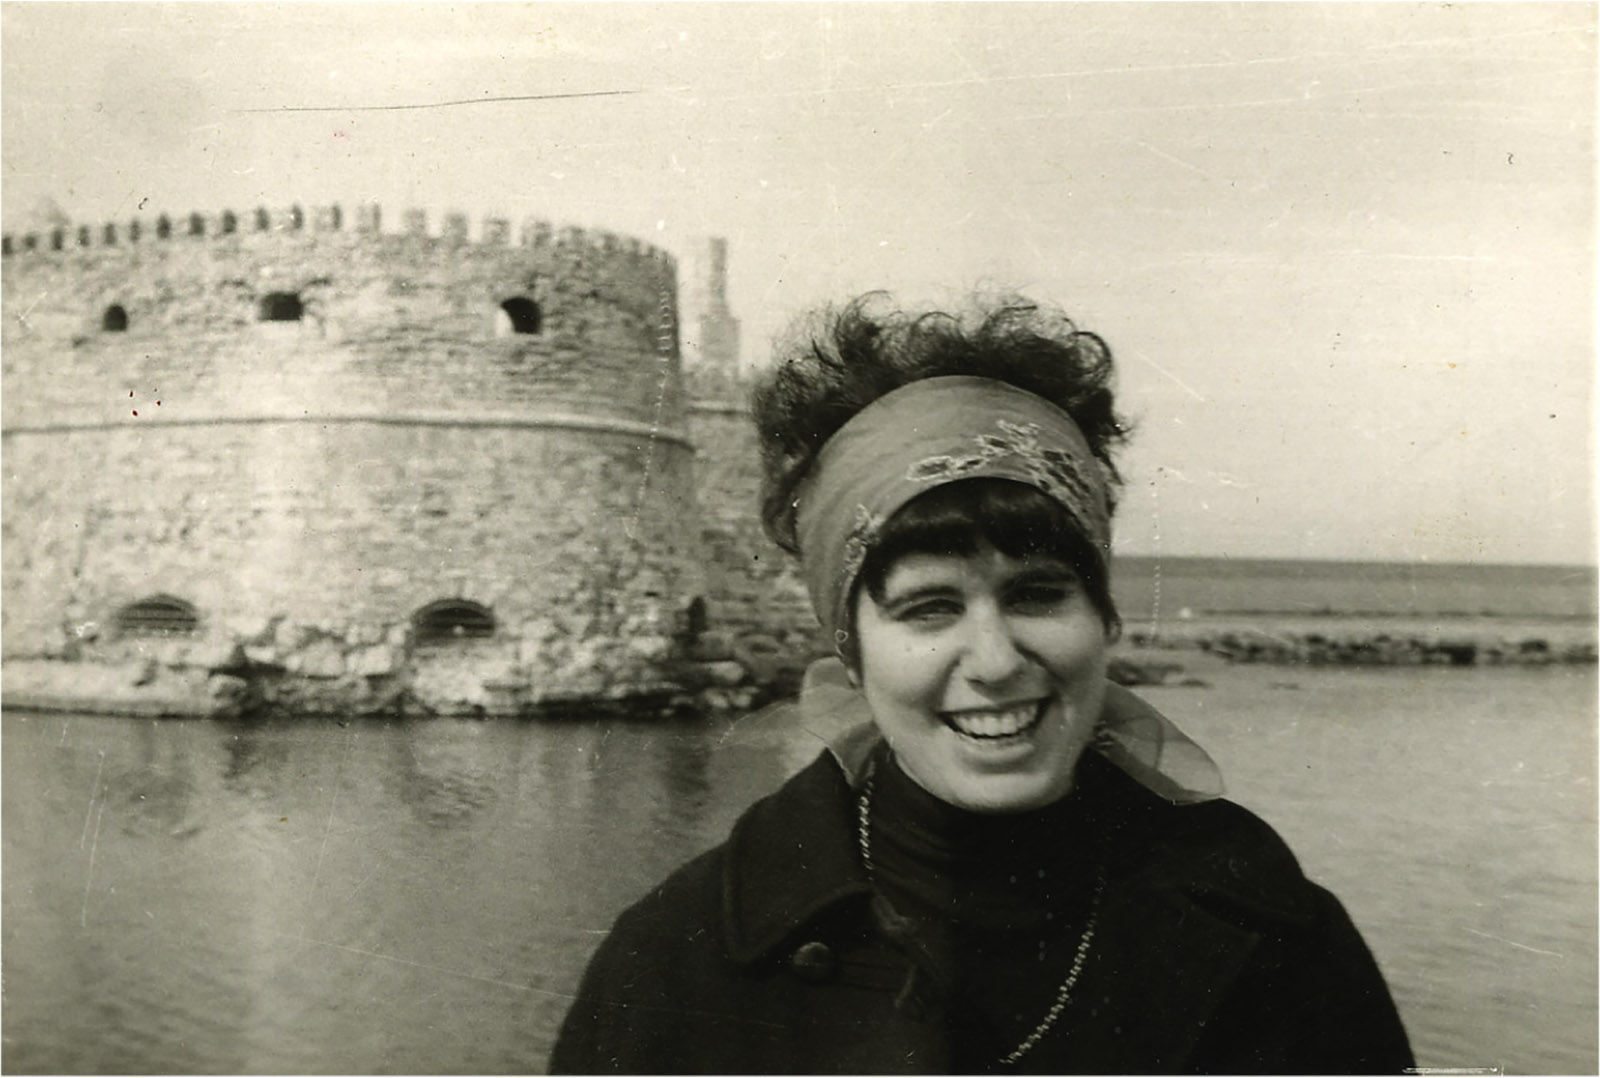 Andrea Dworkin in Heraklion, Crete, 1966